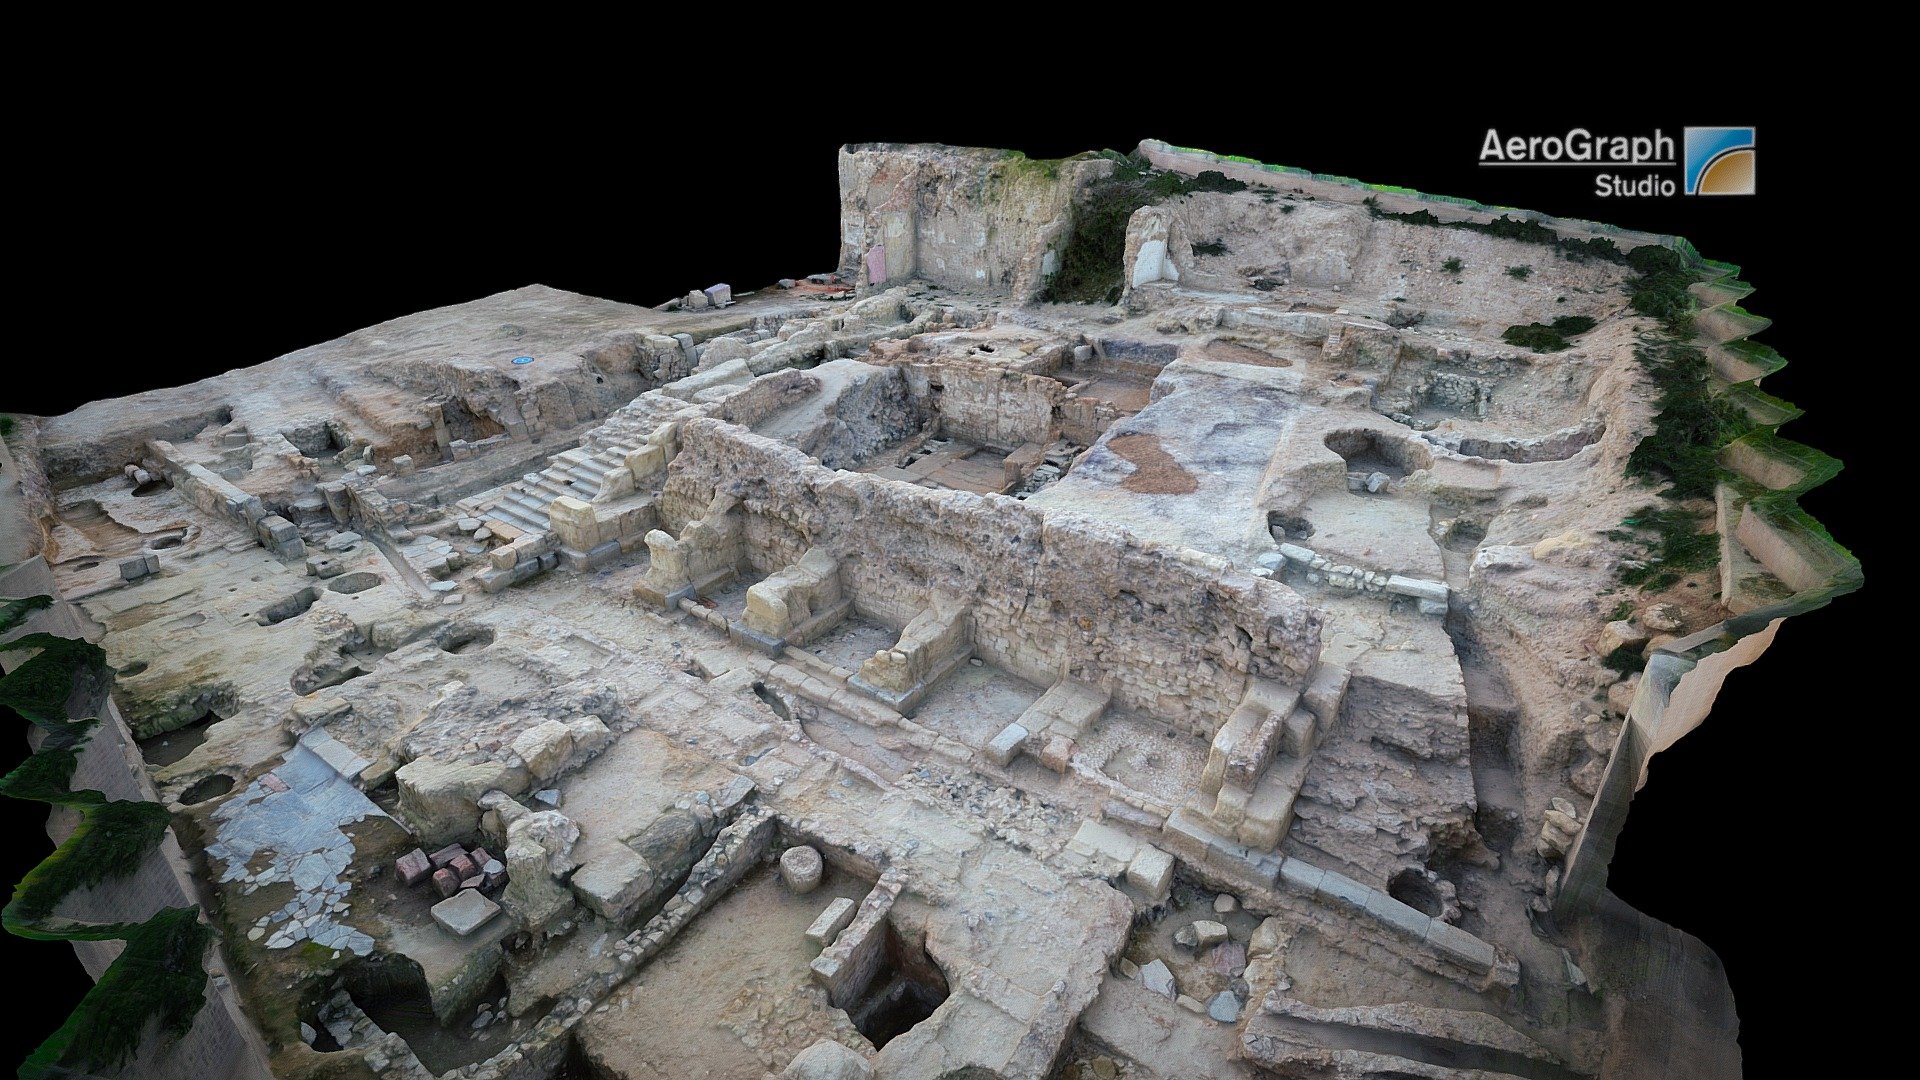 Excavations in Roman Forum of Cartagena, Spain